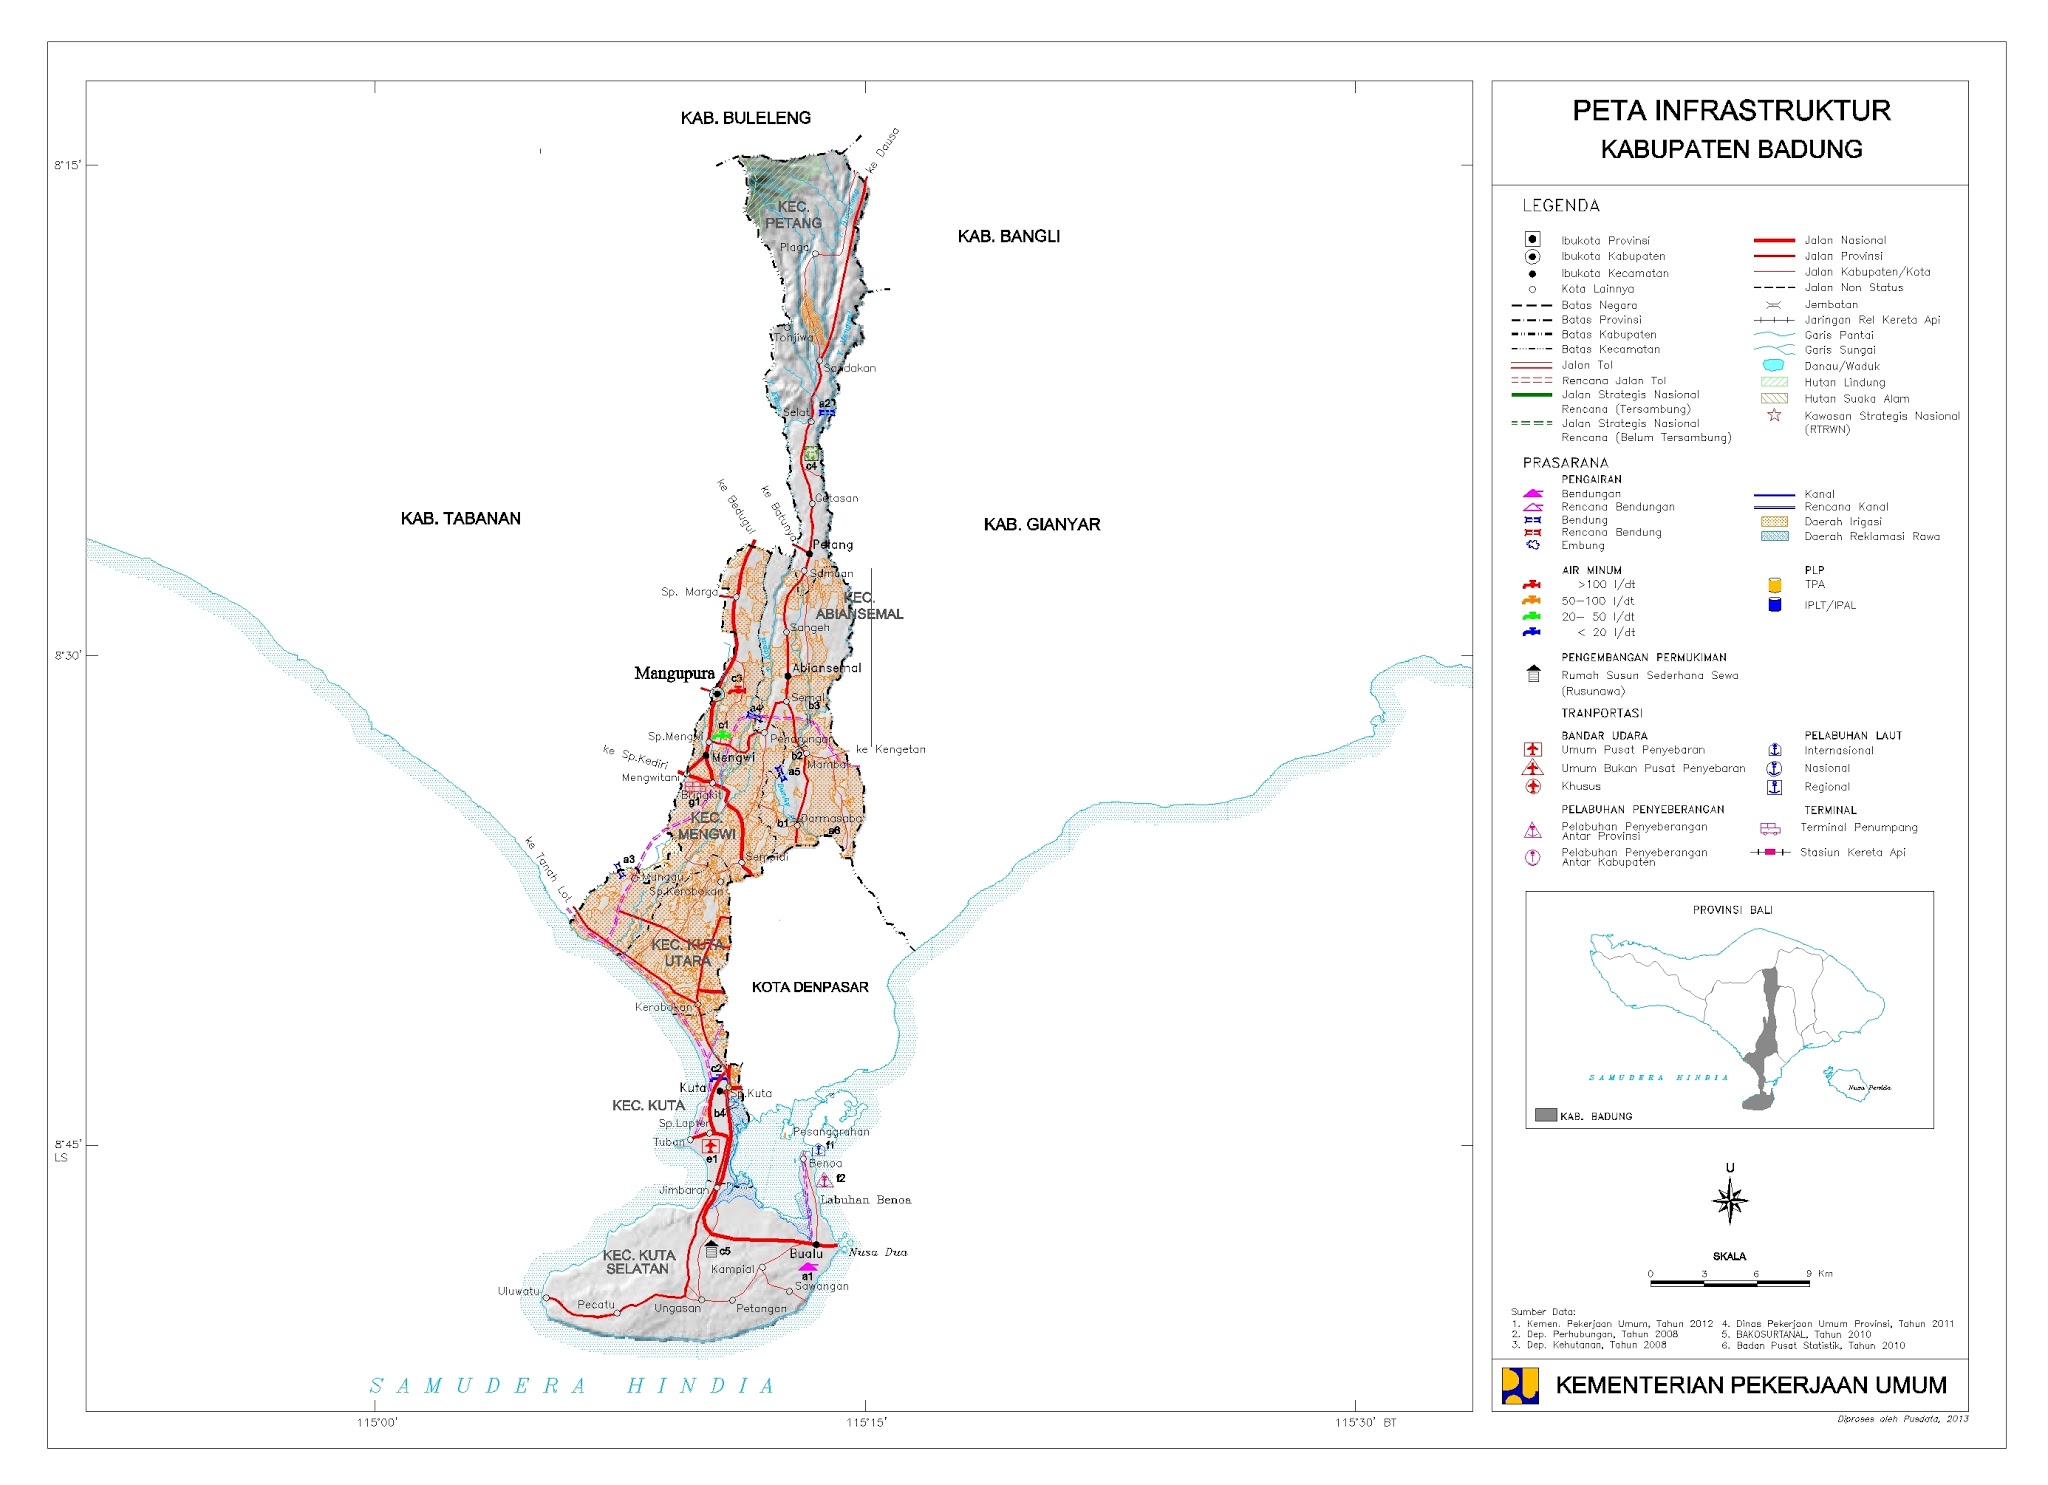 Peta Kota Peta Kabupaten Badung 